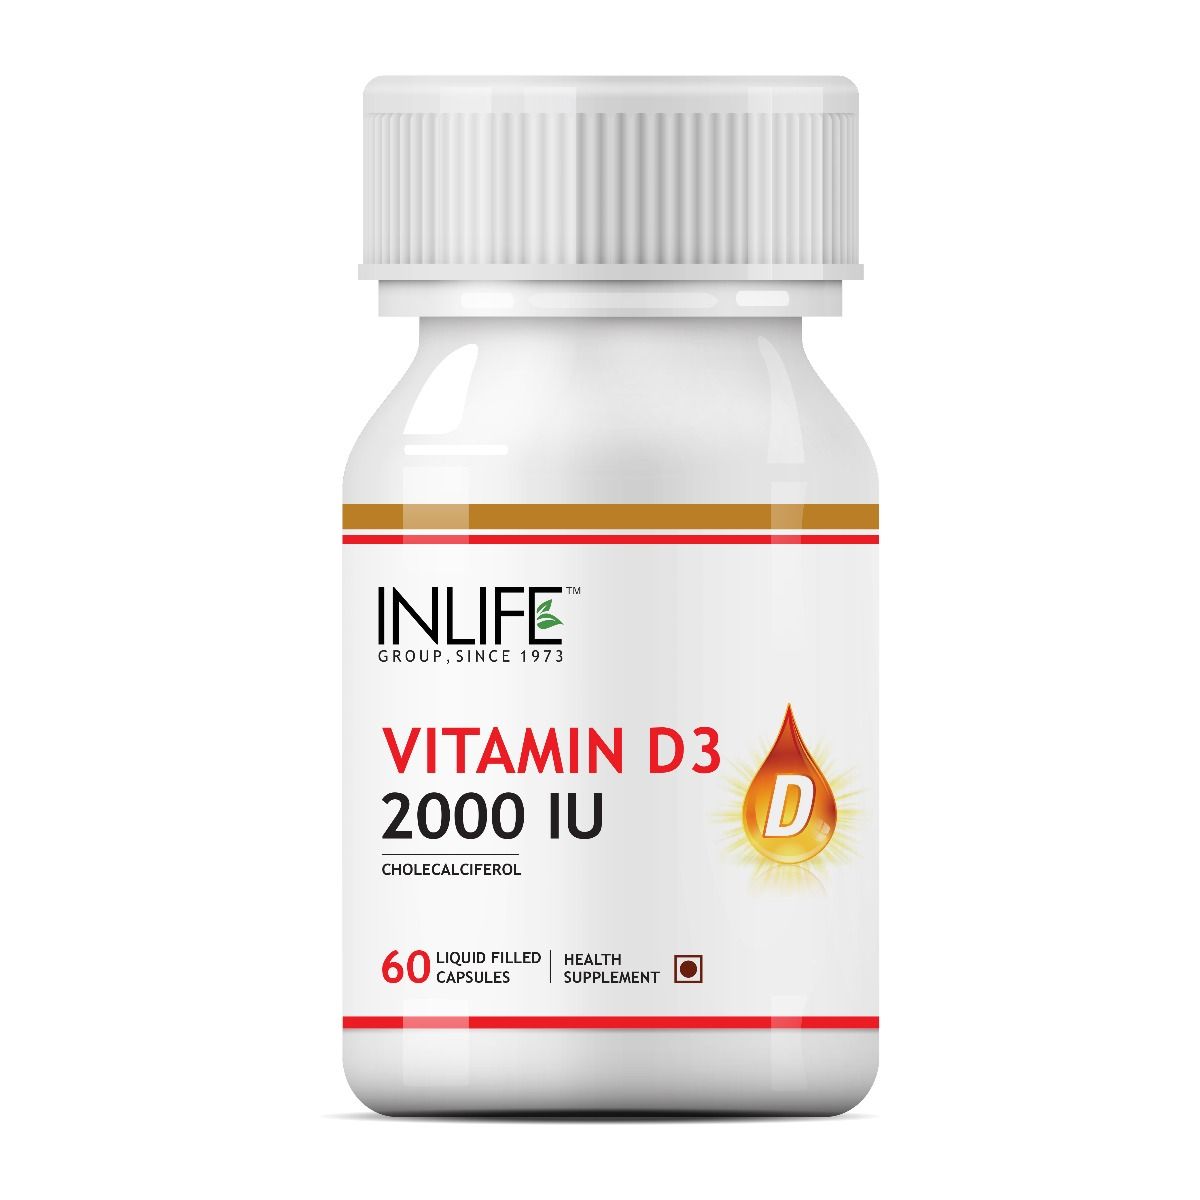 Buy Inlife Vitamin D3 2000 IU, 60 Capsules Online